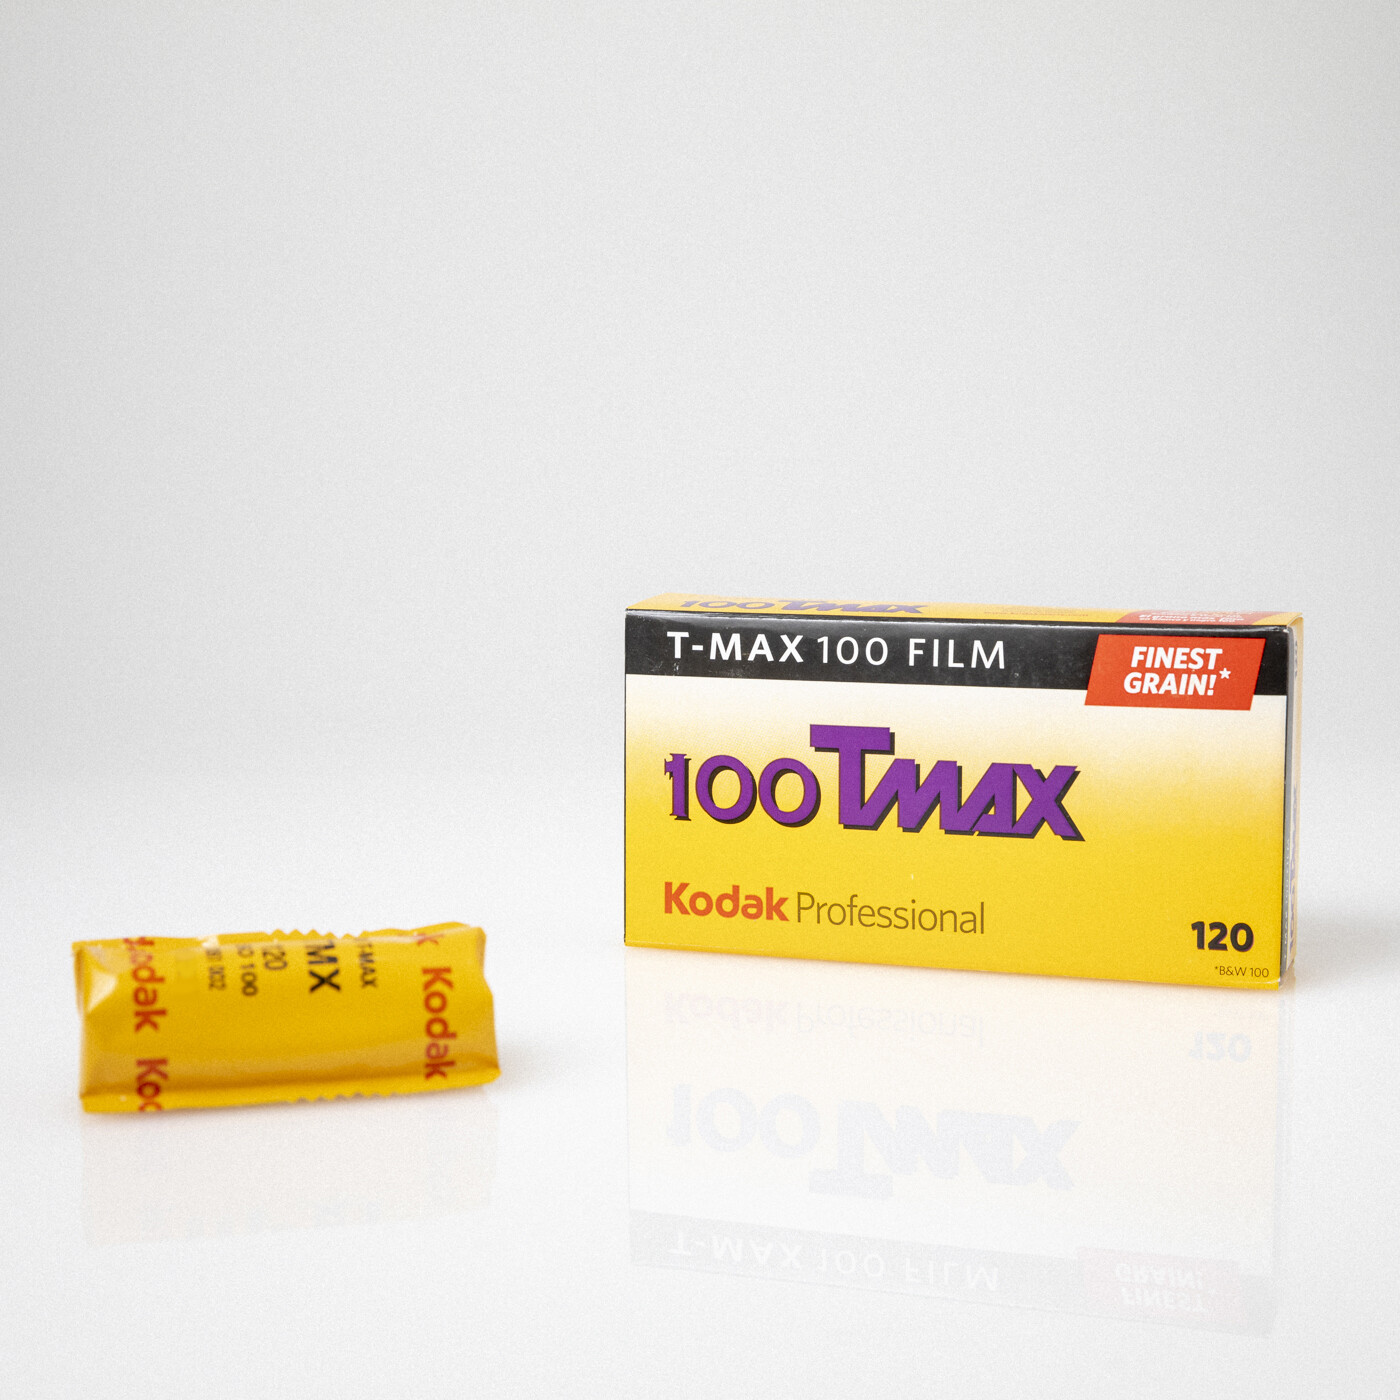 Expired 12/20 - Kodak TMAX 100 120